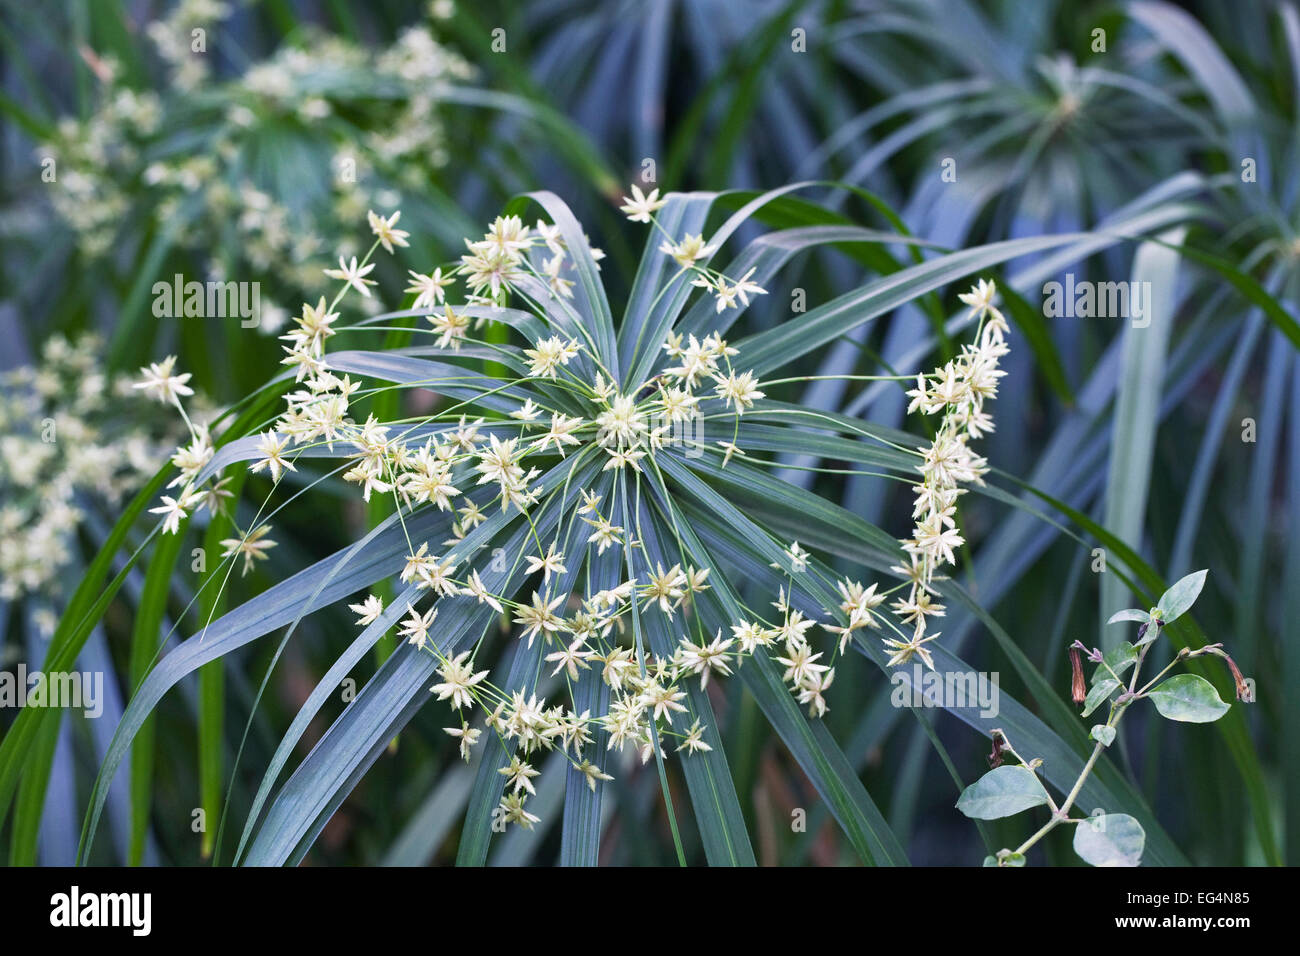 Cyperus involucratus. Umbrella plant in flower. Stock Photo